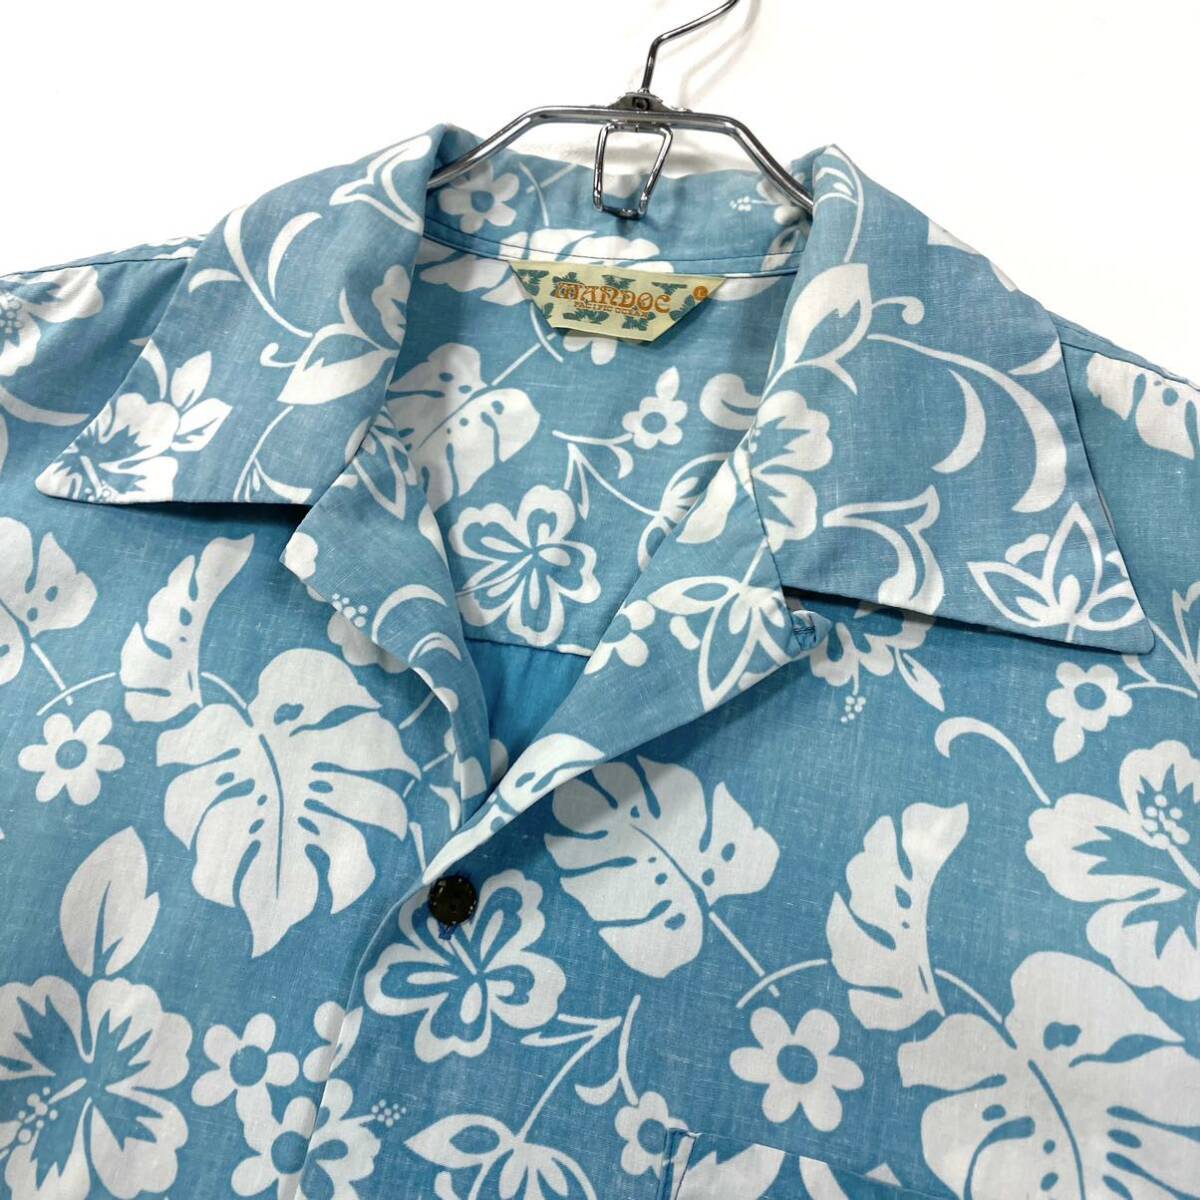 MANDOC アロハシャツ オープンカラー ハワイアンシャツ リバースプリント ハイビスカス柄 メンズL ブルー系の画像4